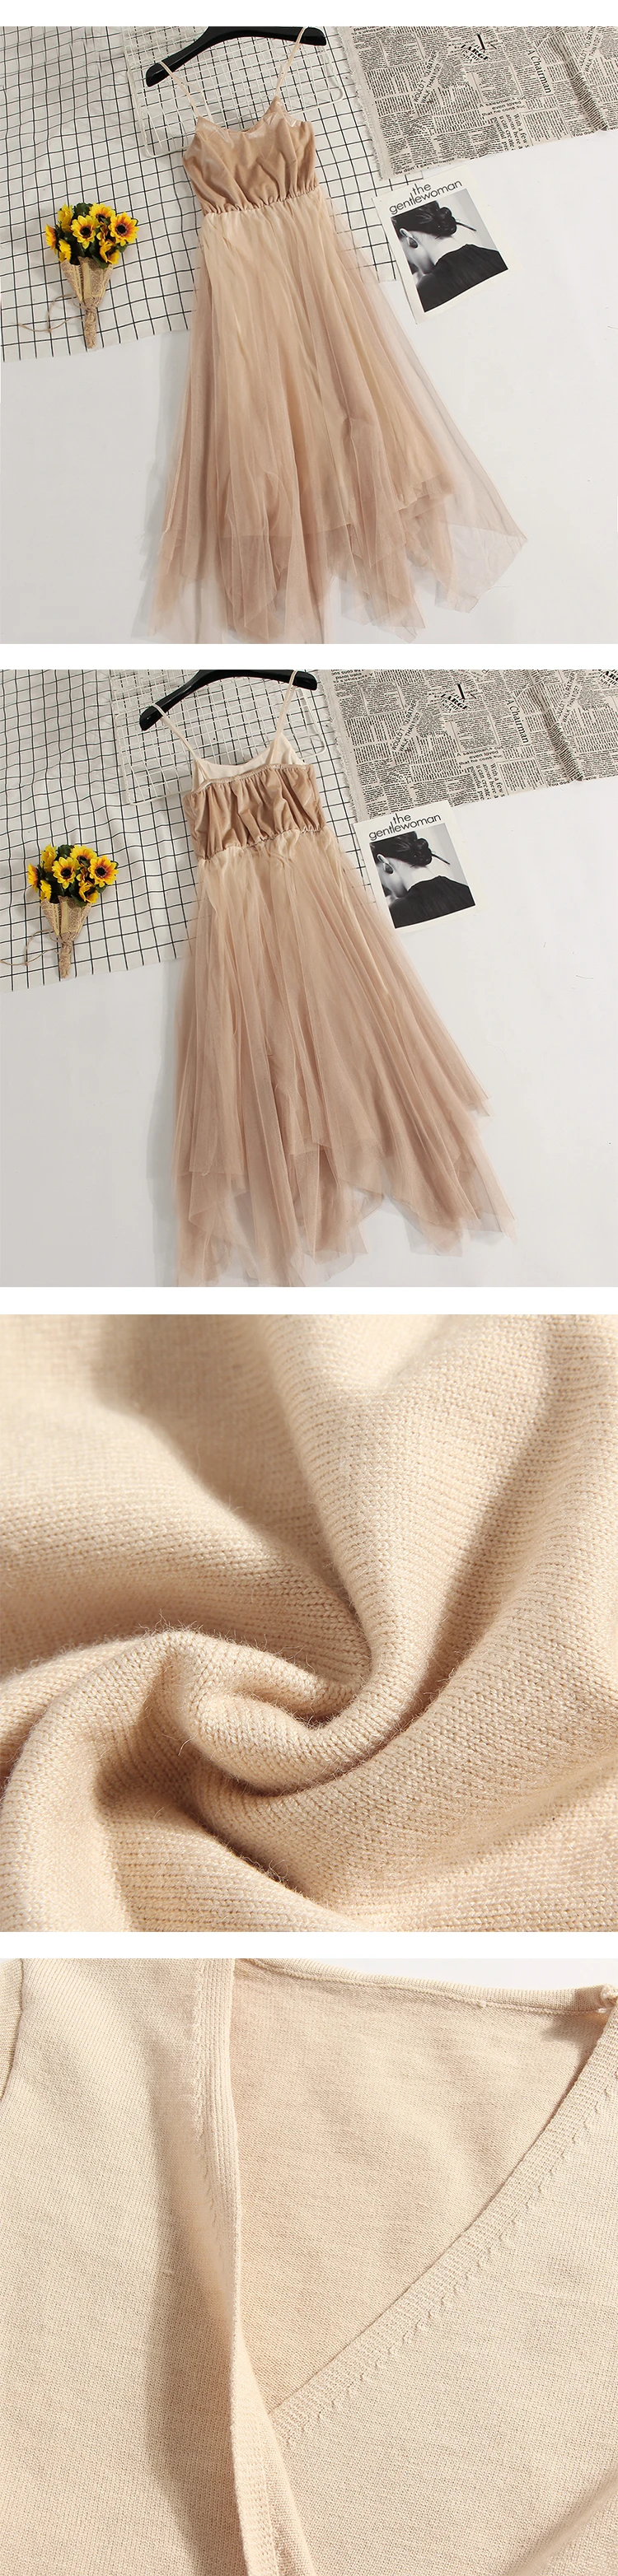 Женское платье с расклешенными рукавами, v-образным вырезом, асимметричное Плиссированное трикотажное платье с оборками, винтажная повязка, Сетчатое газовое бальное платье, пуловер, платье миди